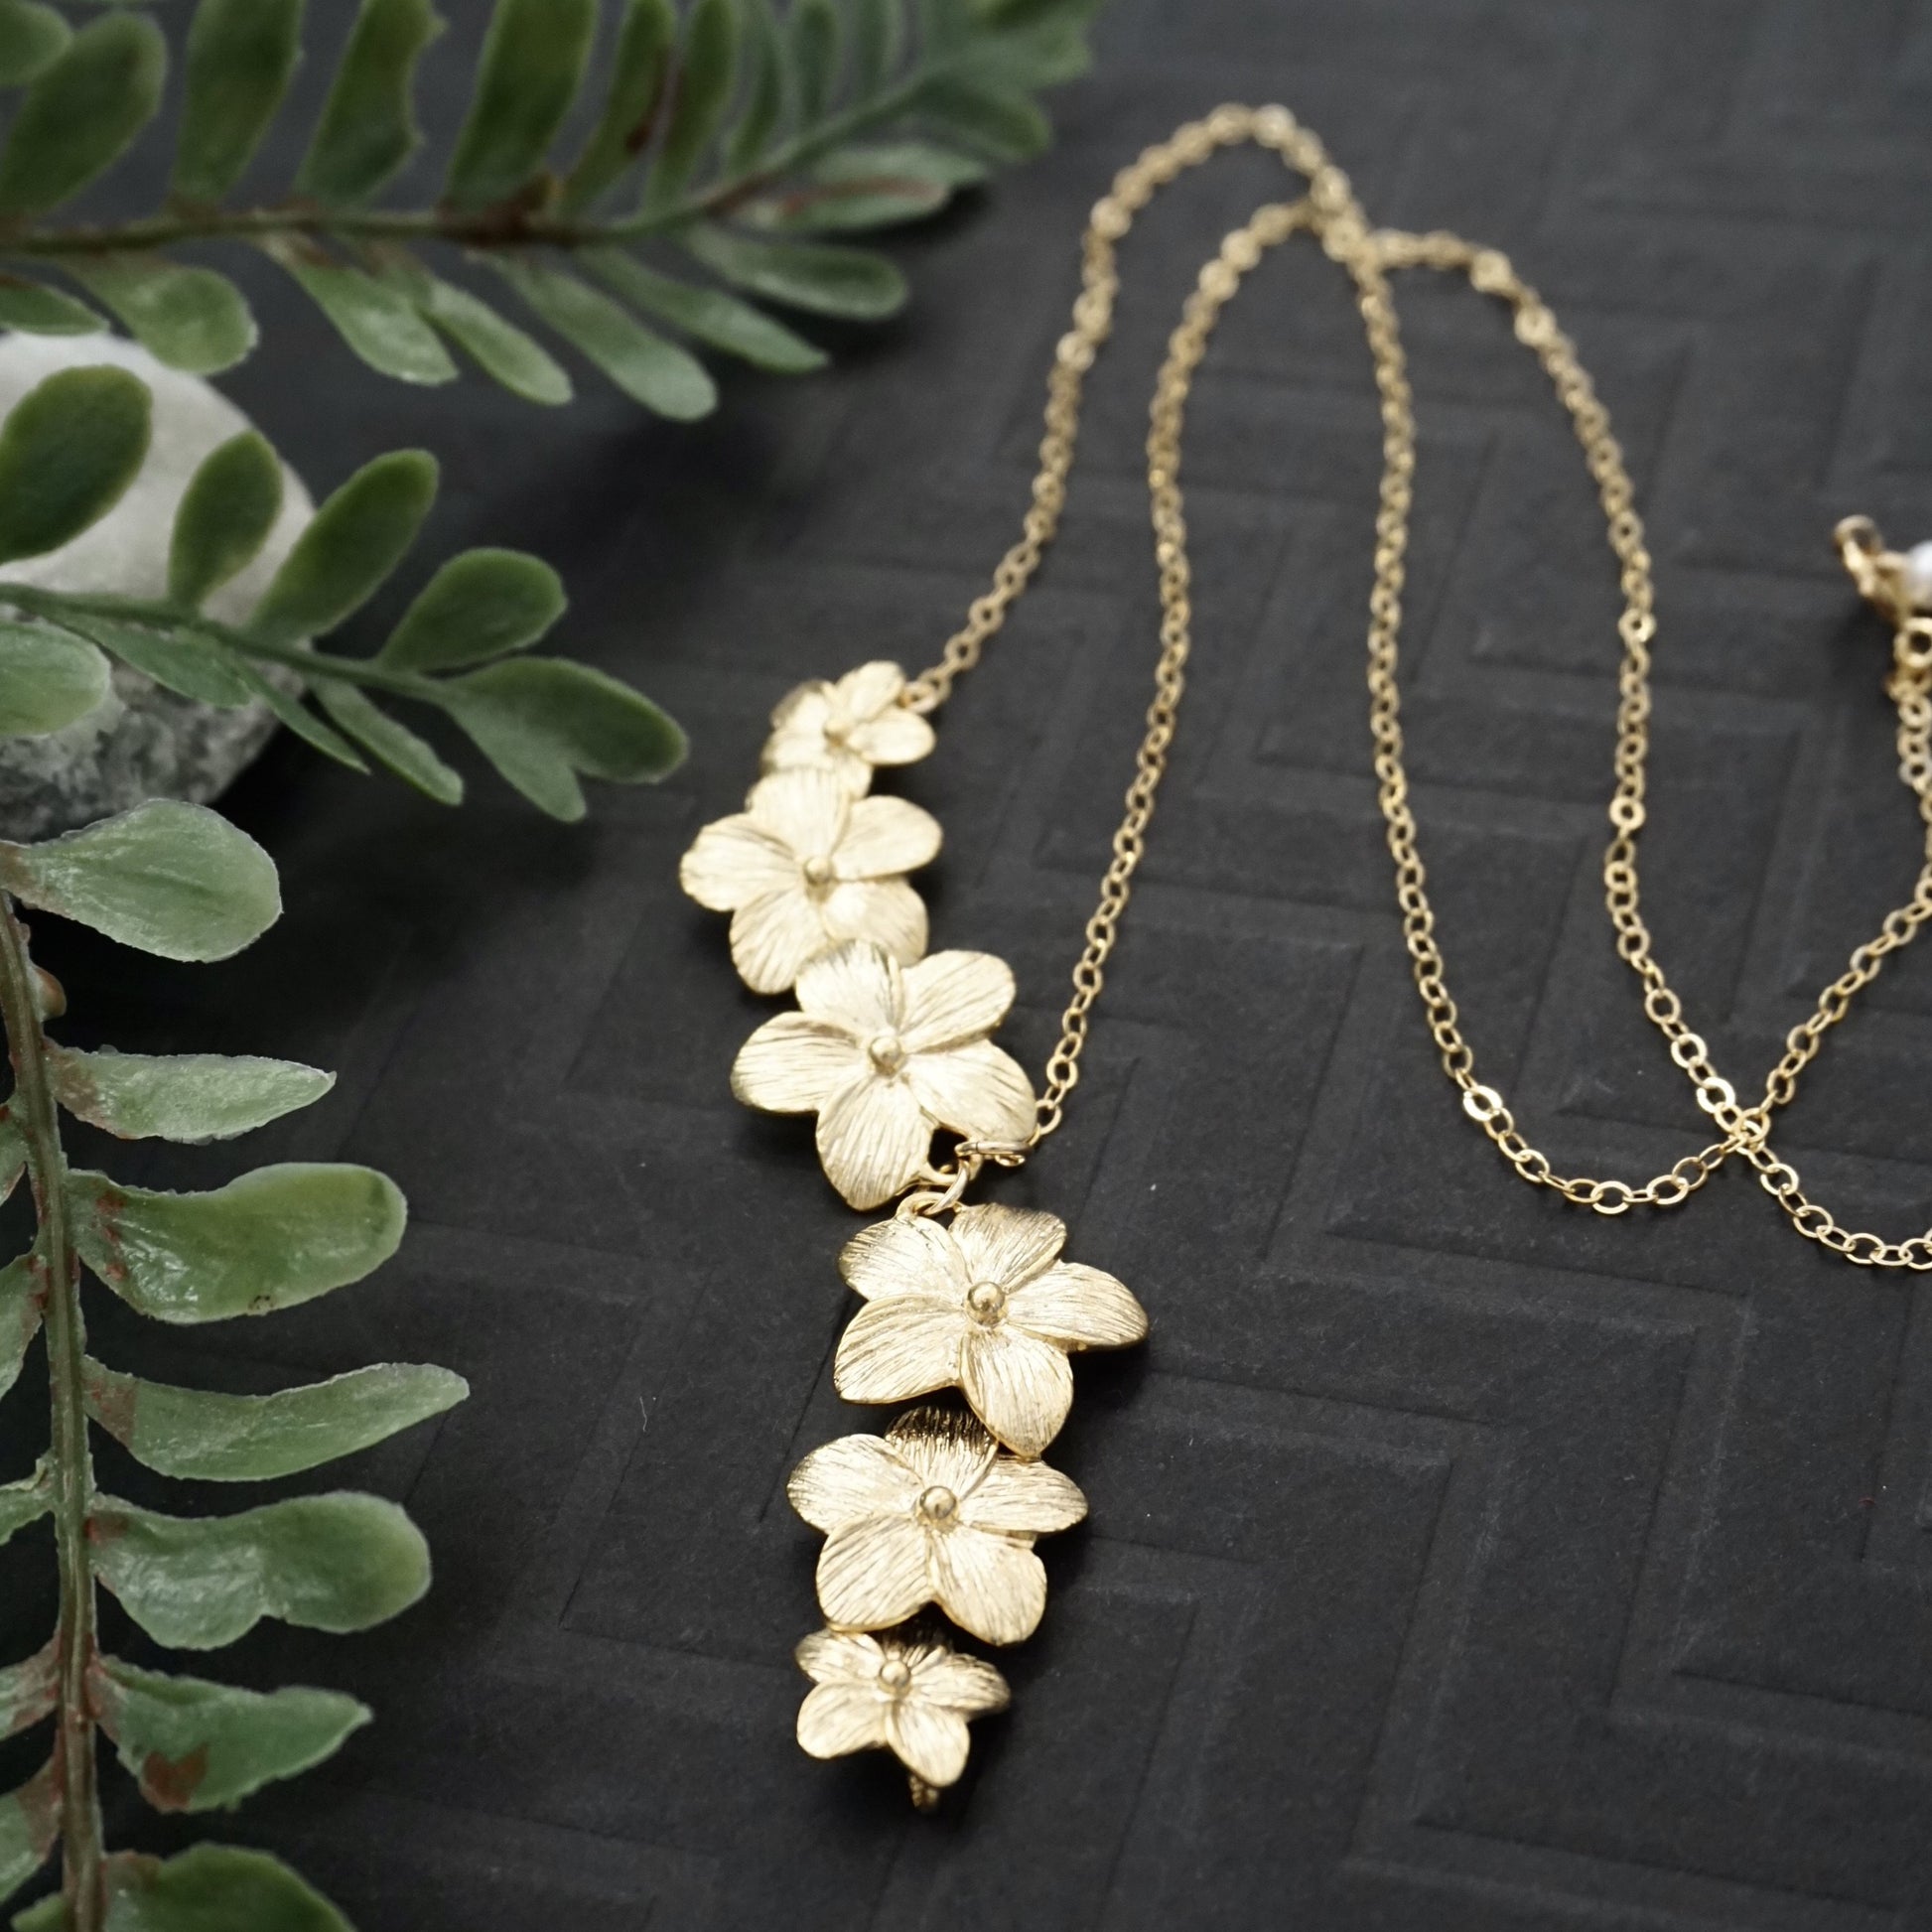 Gold plumeria flower necklace